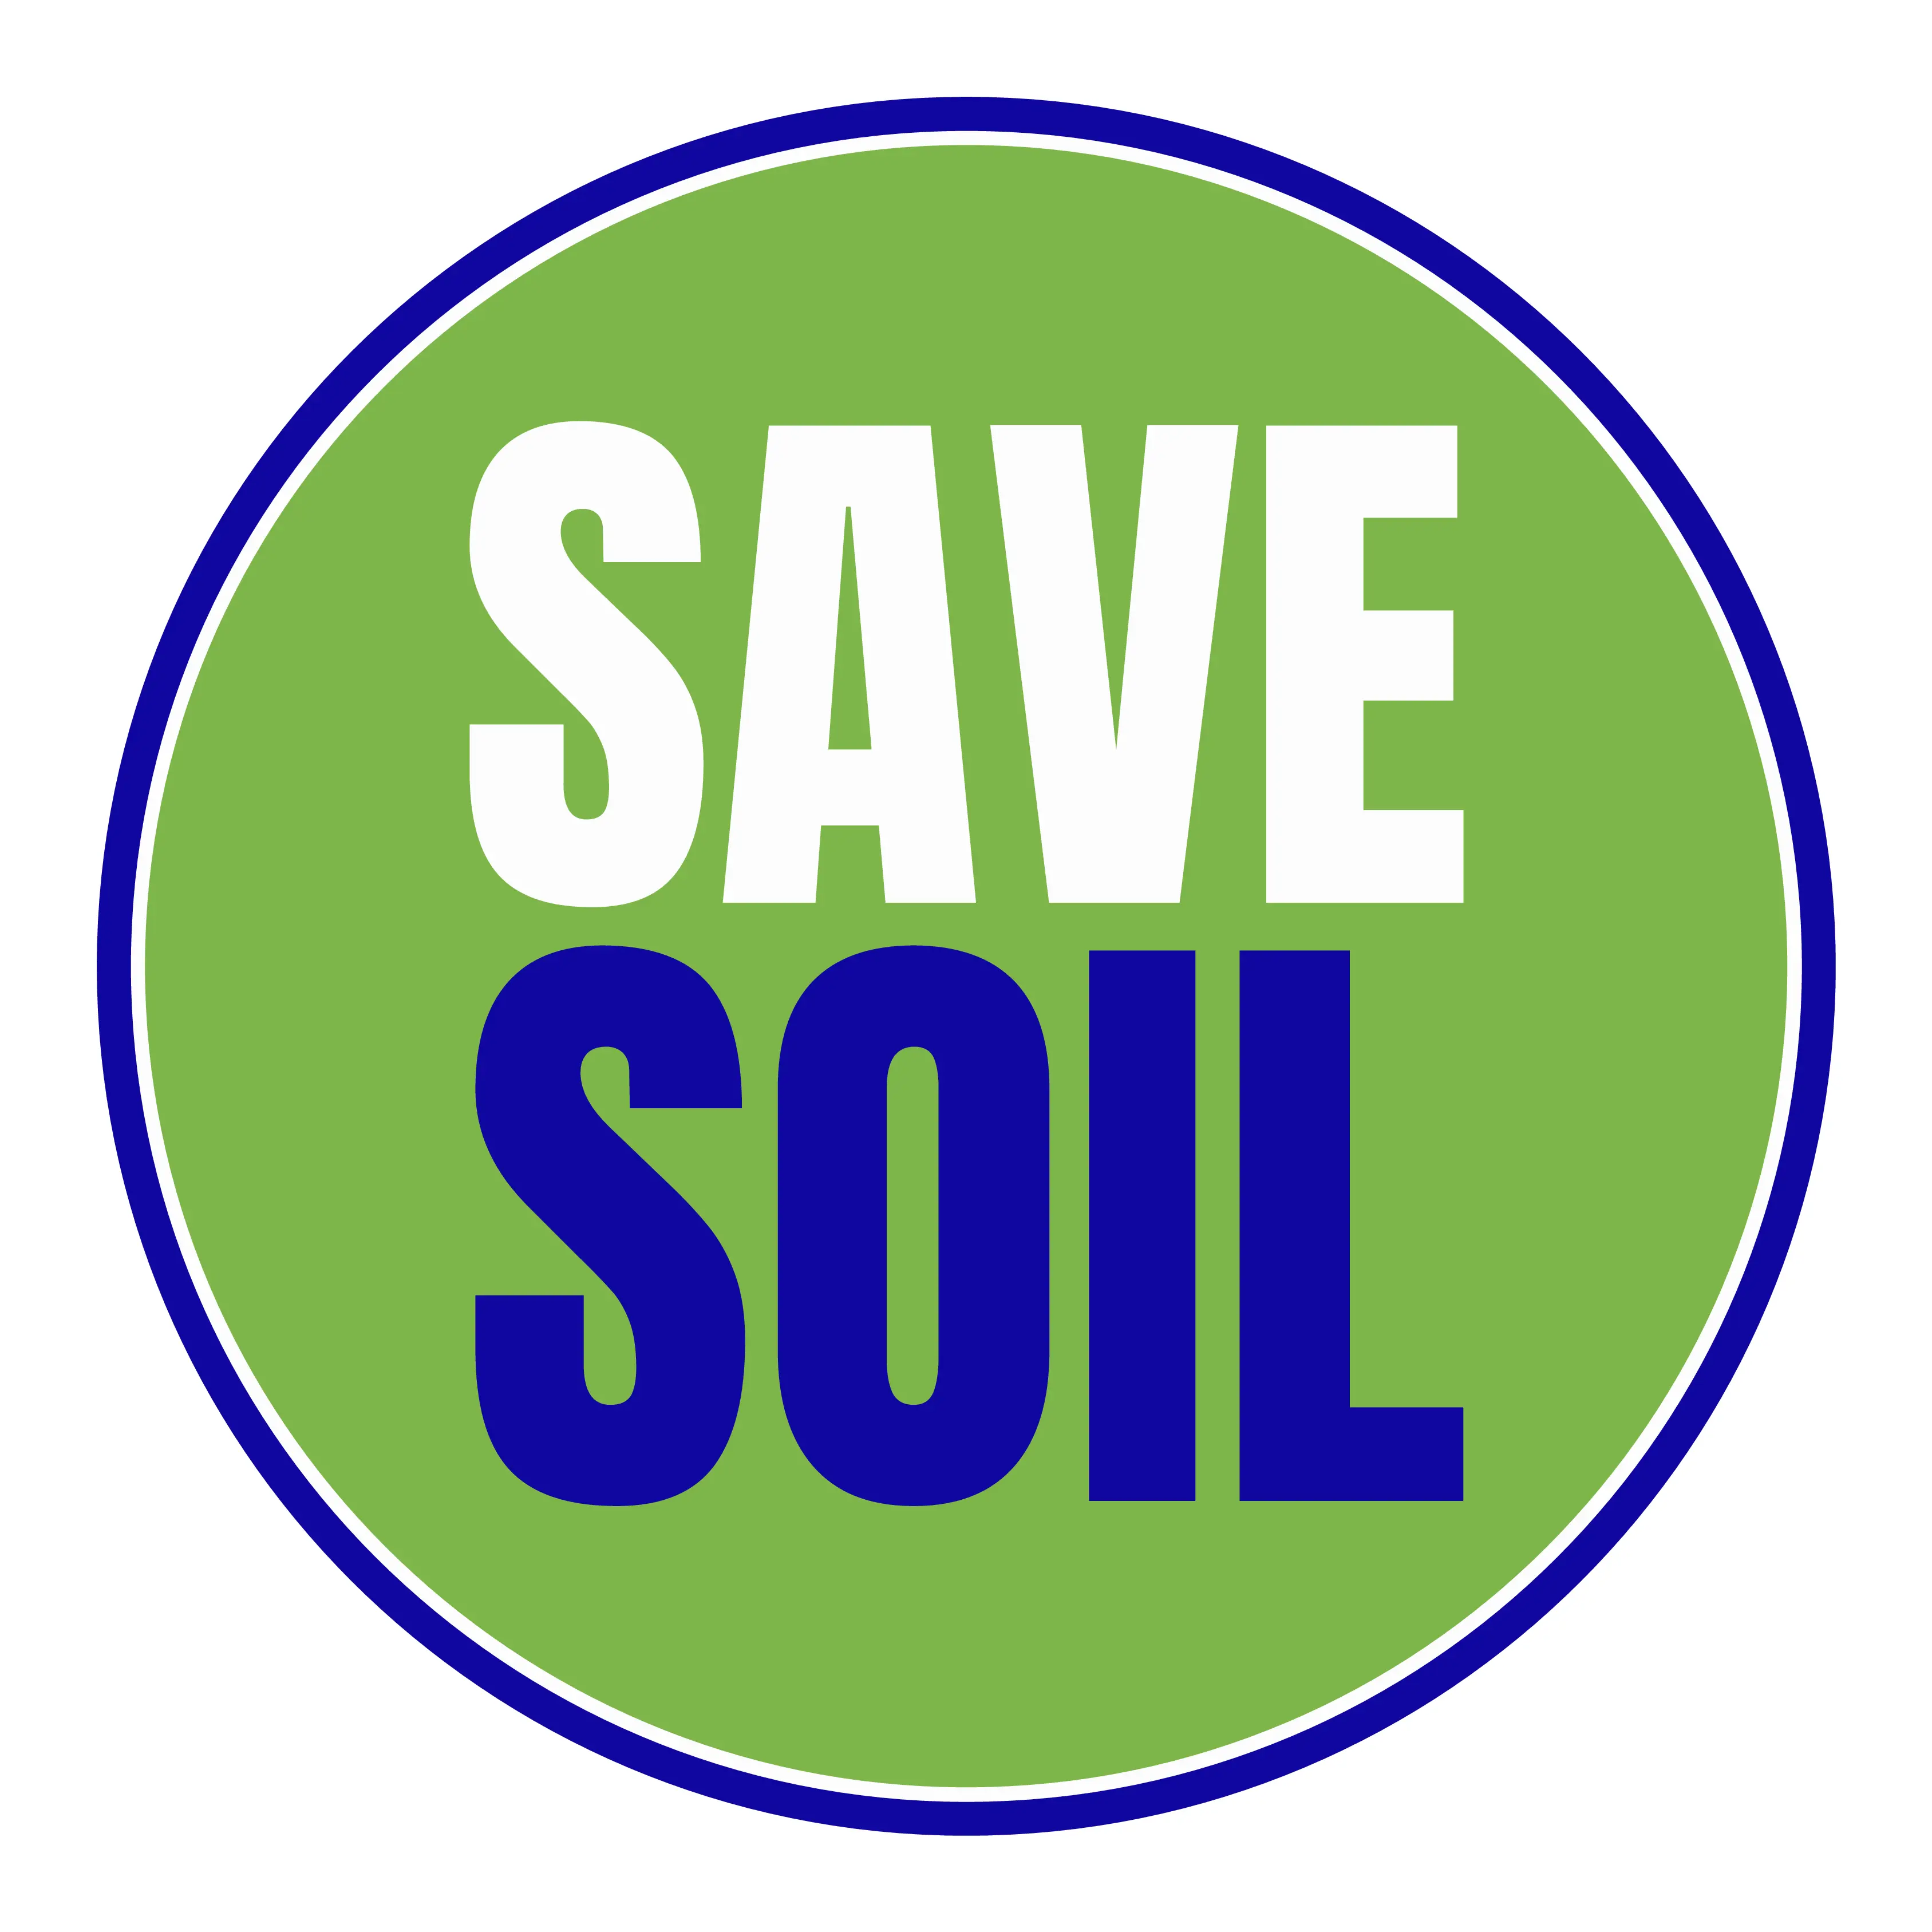 Save Soil logo